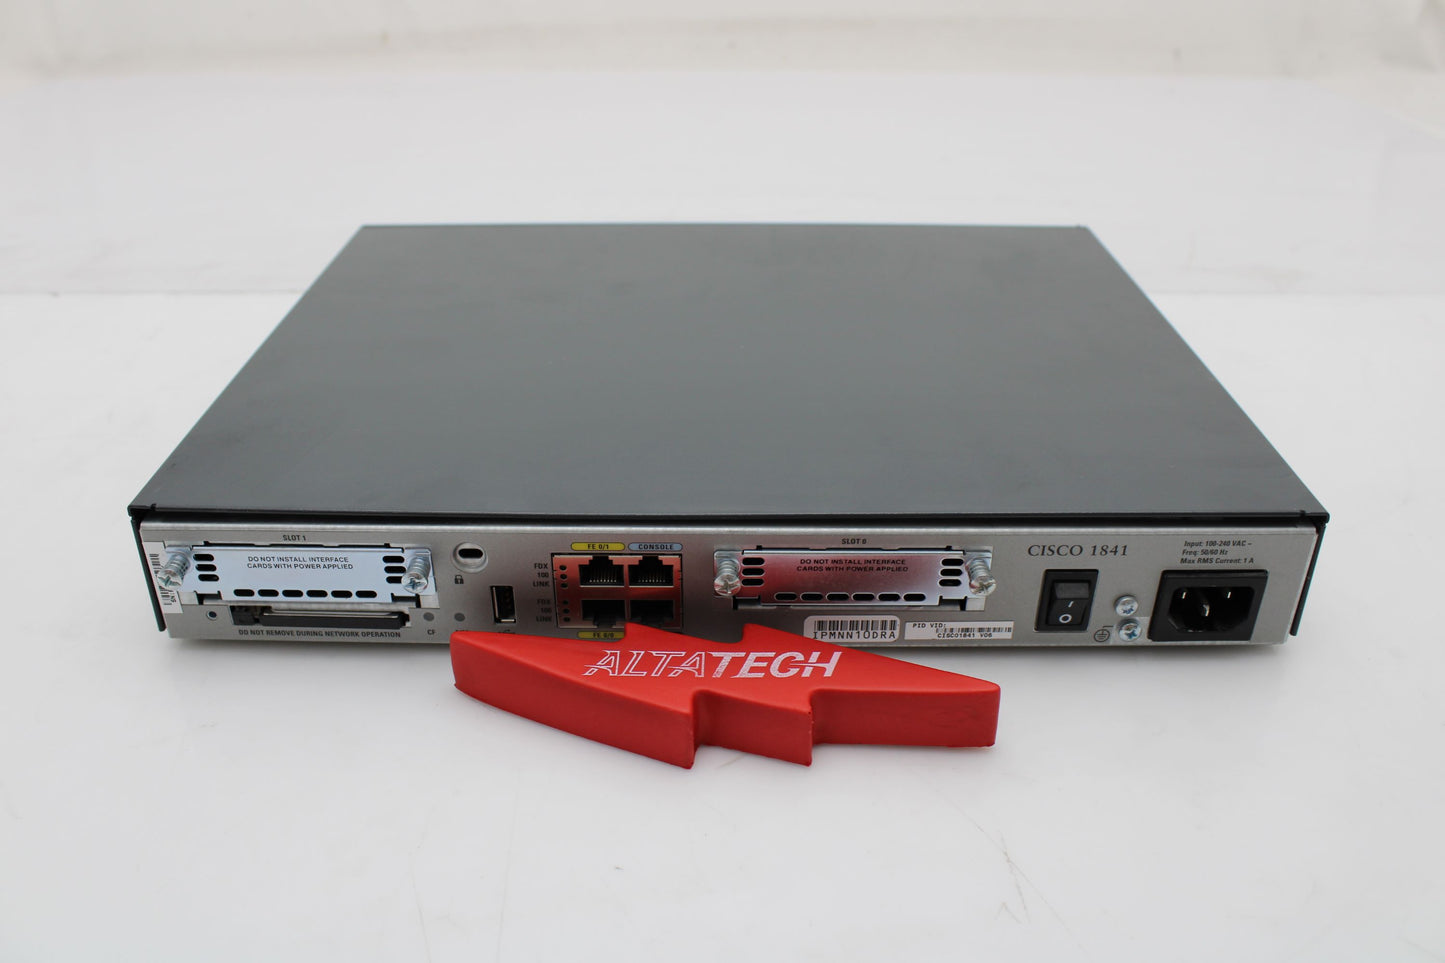 Cisco CISCO1841 Cisco 1841 Router (Modular), Used